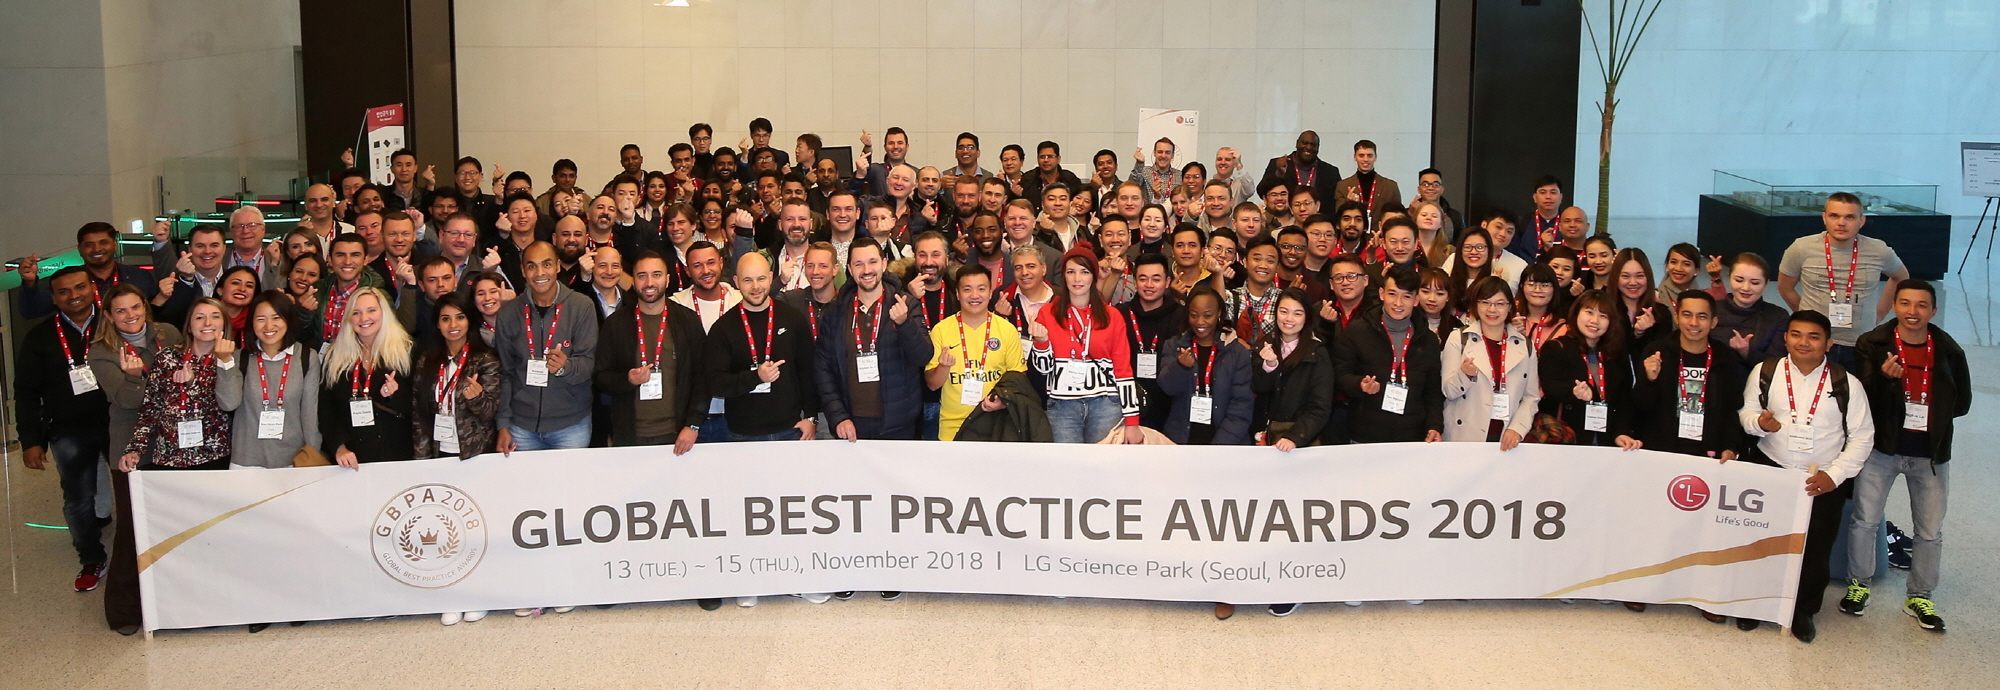 LG전자가 14일 서울 강서구 마곡에 위치한 ‘LG사이언스파크’에서 해외 32개 판매법인 마케팅 담당자들이 참가한 가운데 ‘Global Best Practice Awards 2018’ 행사를 열었다. 행사 참가자들이 기념촬영을 하고 있다.